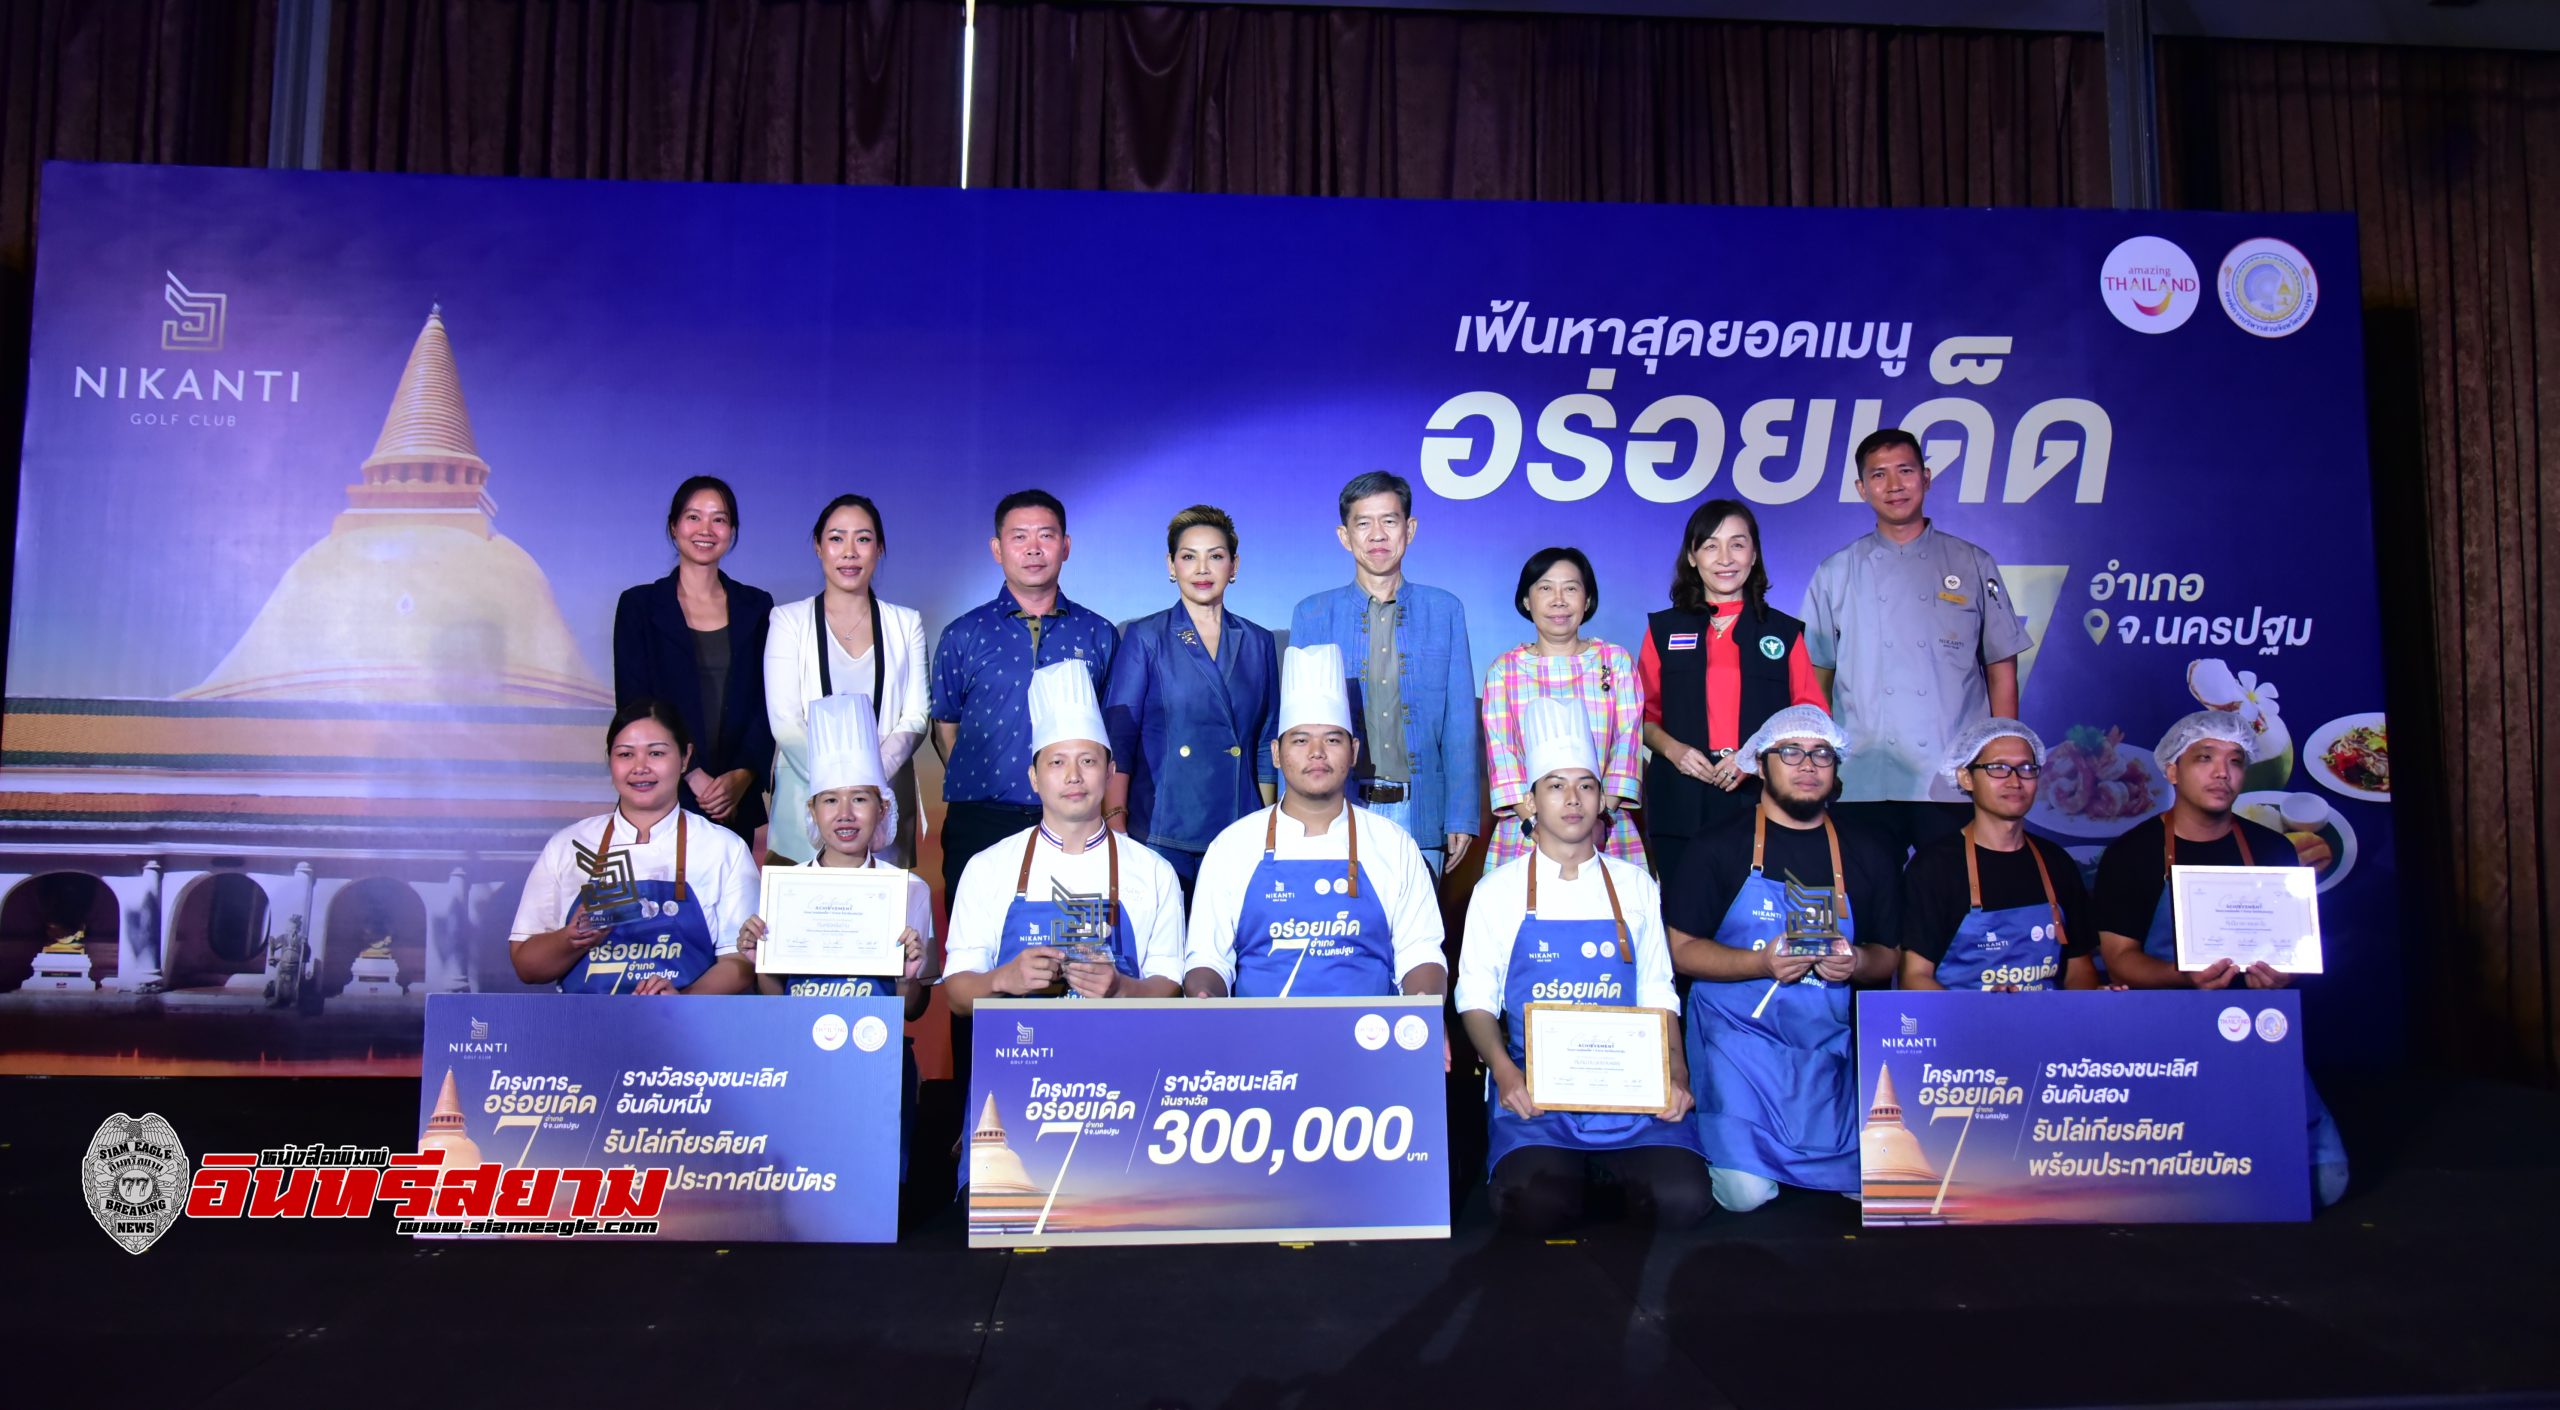 นครปฐม-การแข่งขันโครงการอร่อยเด็ด 7 อำเภอ รอบชิงชนะเลิศลุ้นรับเงินรางวัล 1,000,000 บาท